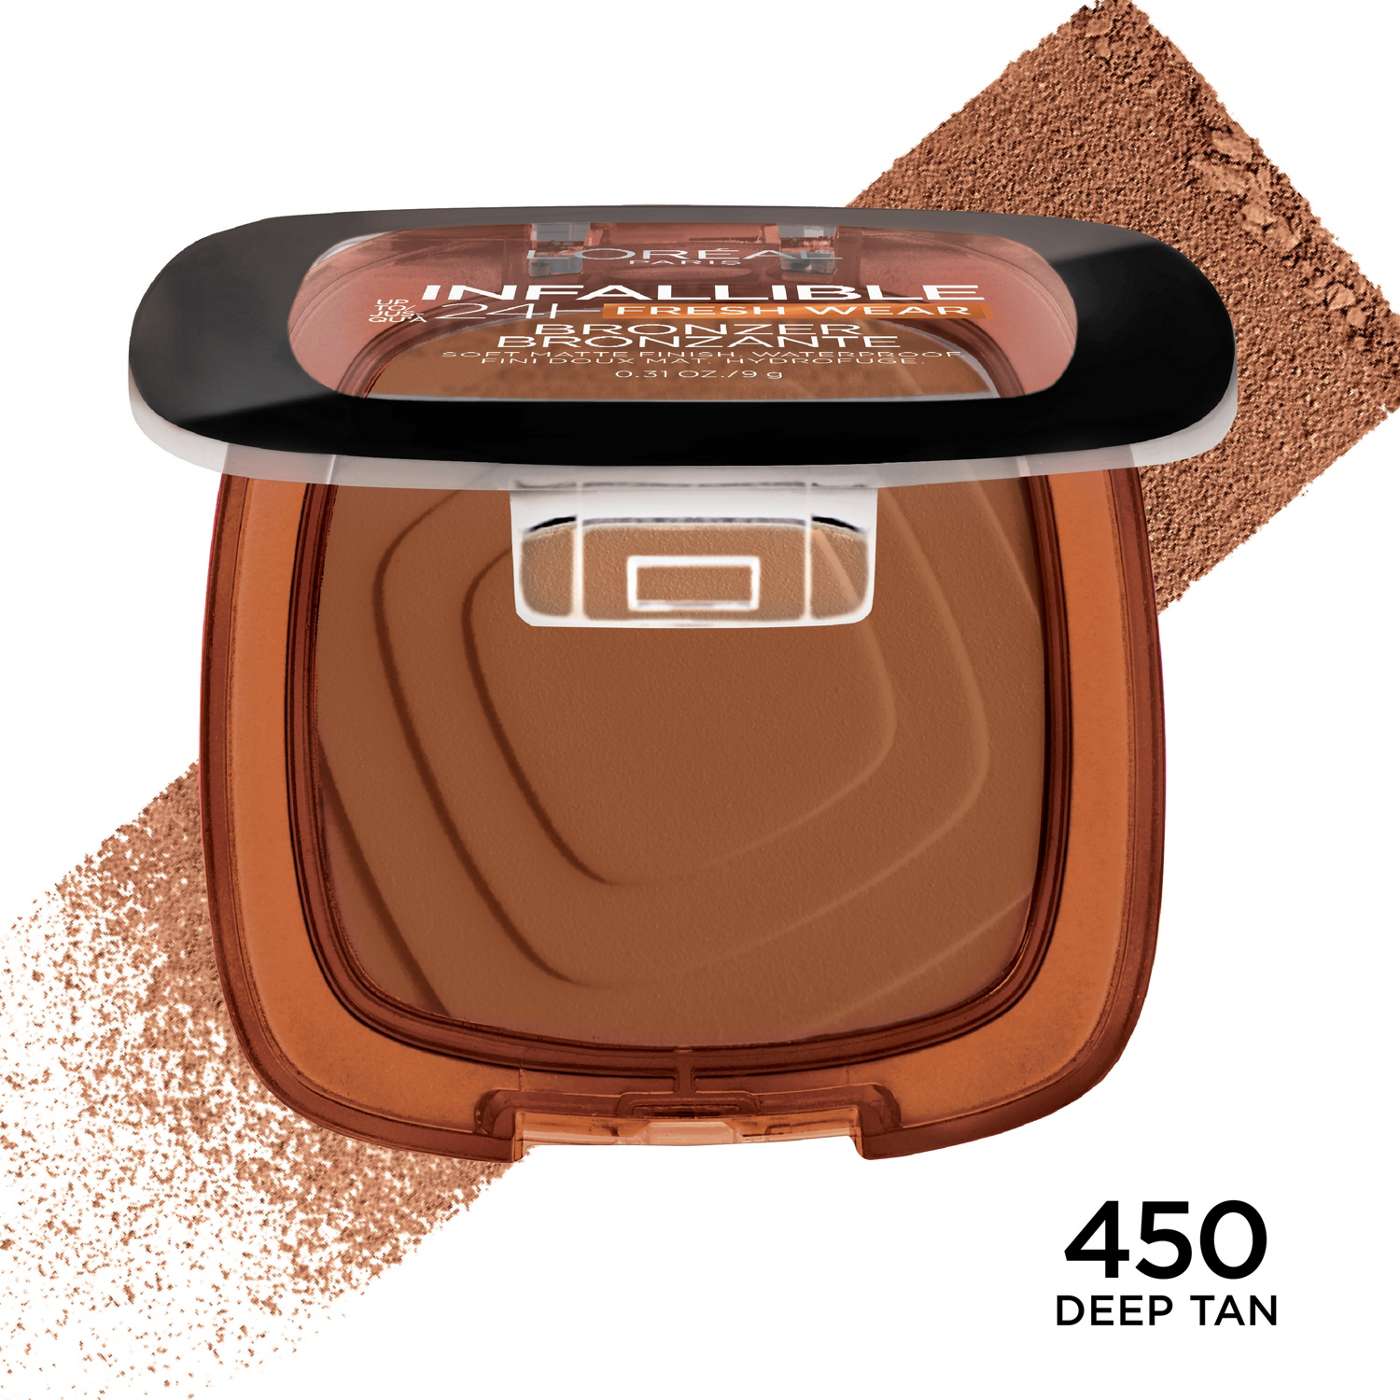 L'Oréal Paris Infallible 24 Hour Fresh Wear Soft Matte Bronzer - 450 Deep Tan; image 4 of 5